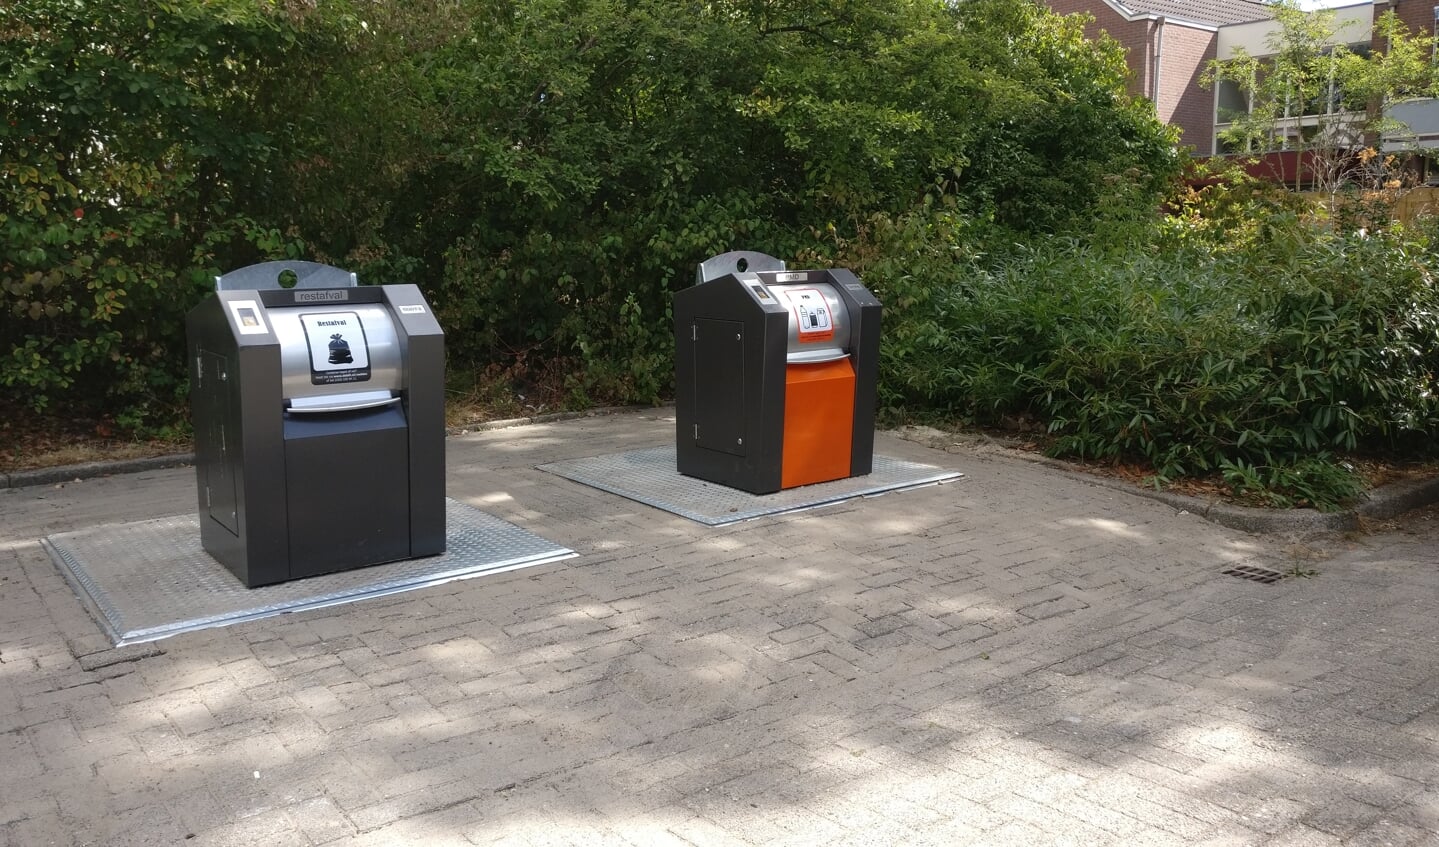 Ten koste van twee parkeerplaatsen zijn bij de Prins Clauslaan in Maartensdijk de locaties 26 (Restafval + GFT) en 27 (PMD) gerealiseerd